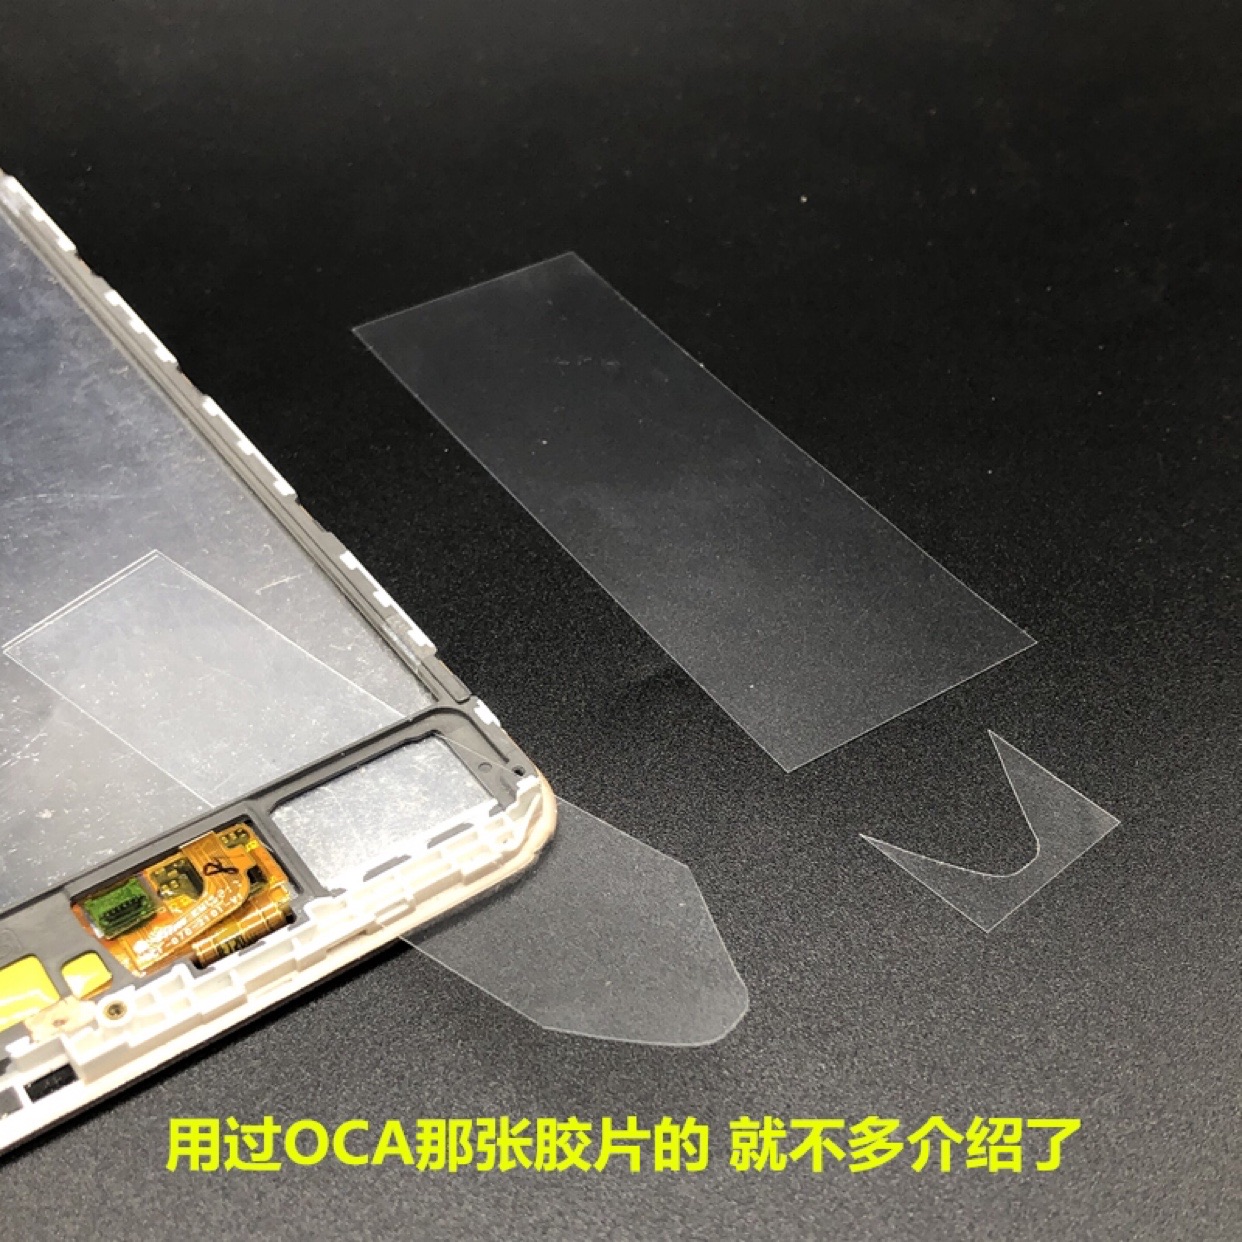 屏.拆框超薄手机12拆0 维修工具曲面撬分离胶塑料卡片名片拆机片